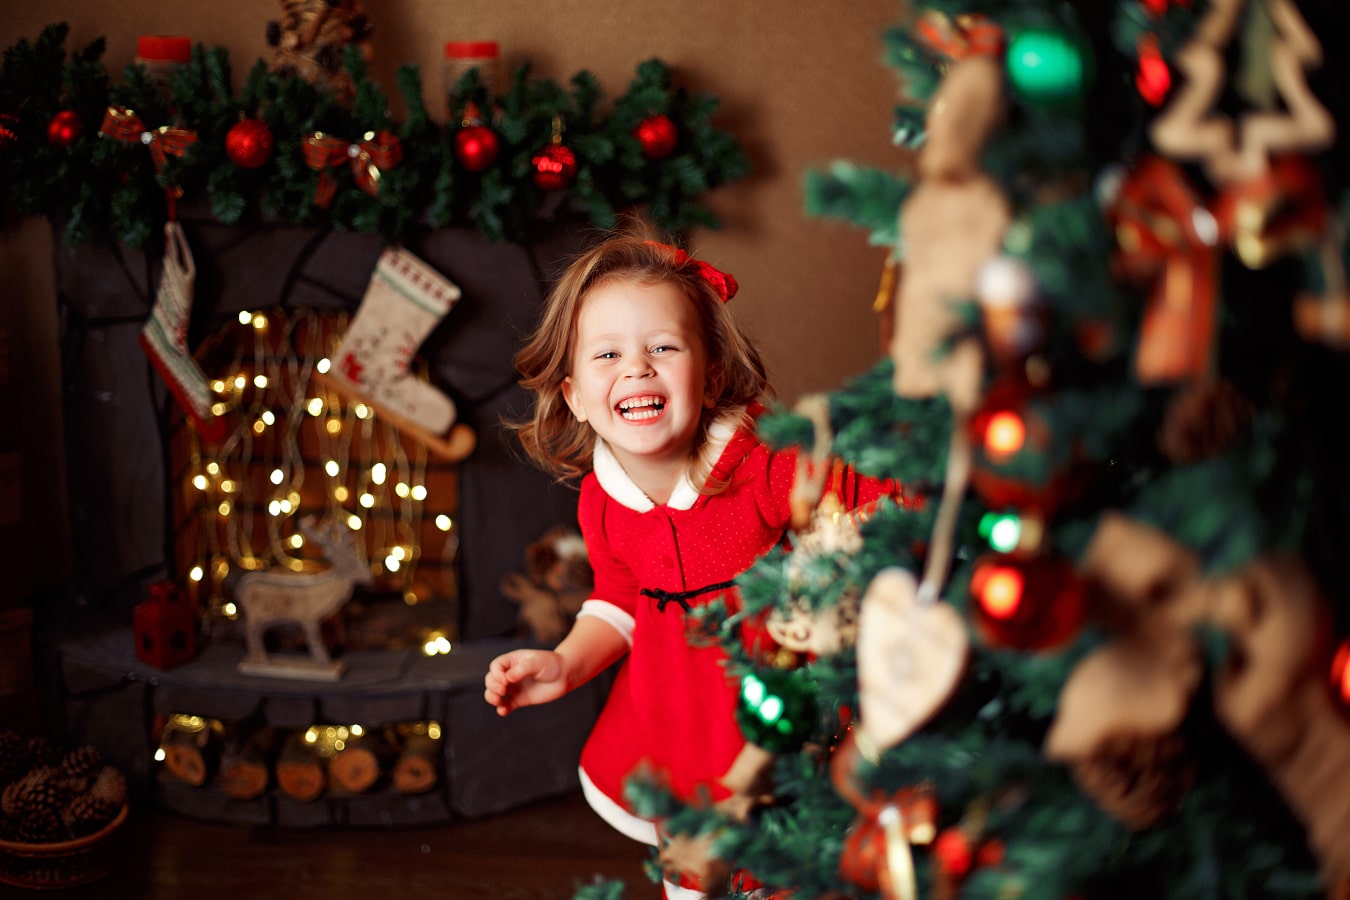 Une petite fille joyeuse dans une robe rouge regarde de derrière le sapin de Noël, en riant, elle est heureuse.